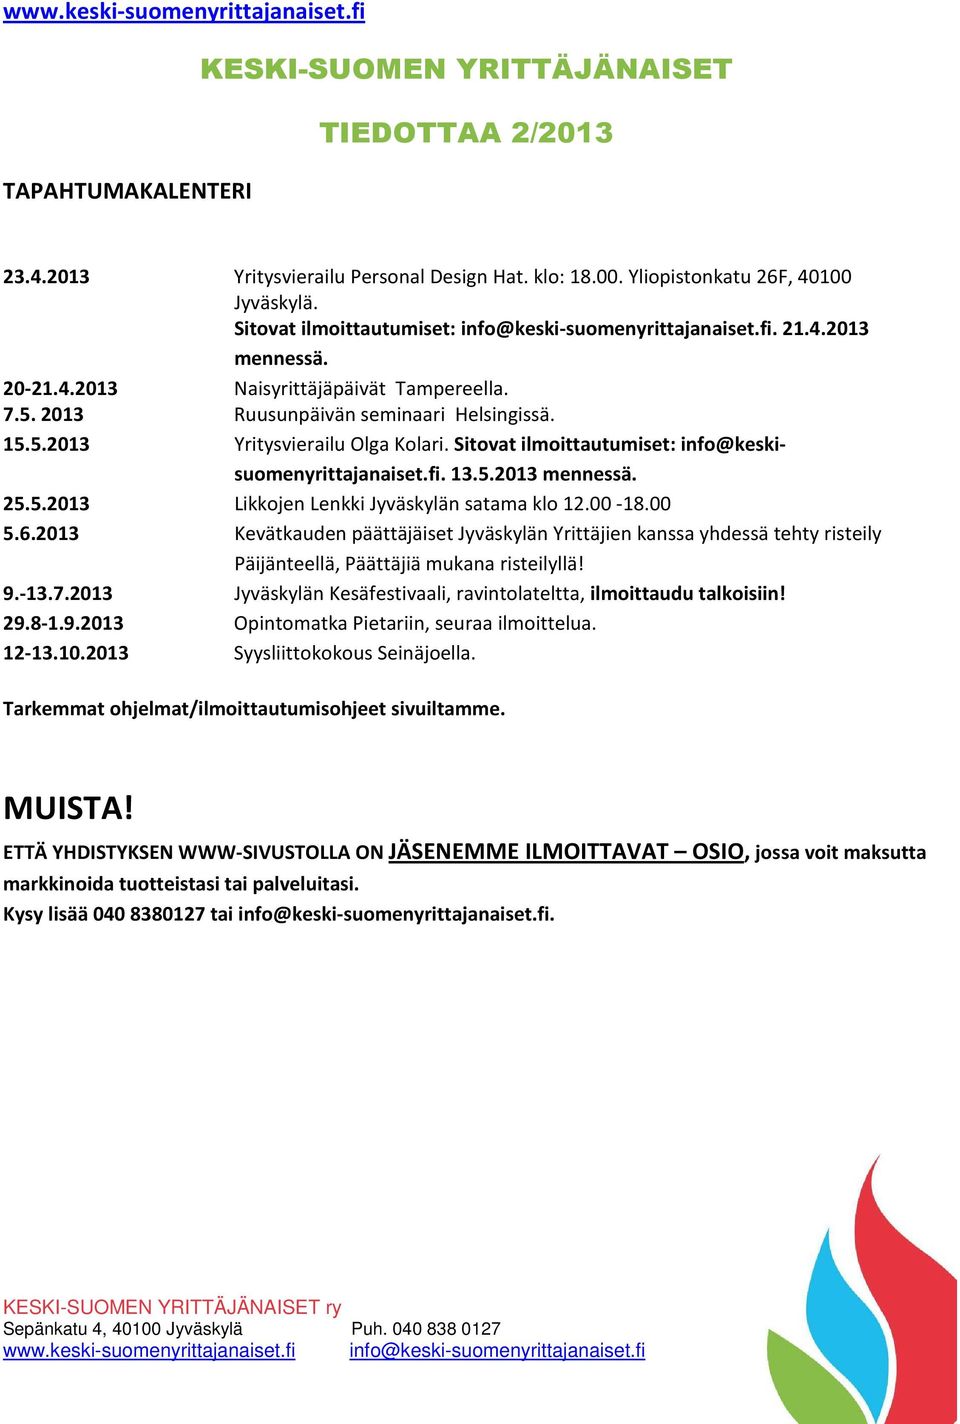 25.5.2013 Likkojen Lenkki Jyväskylän satama klo 12.00-18.00 5.6.2013 Kevätkauden päättäjäiset Jyväskylän Yrittäjien kanssa yhdessä tehty risteily Päijänteellä, Päättäjiä mukana risteilyllä! 9.-13.7.